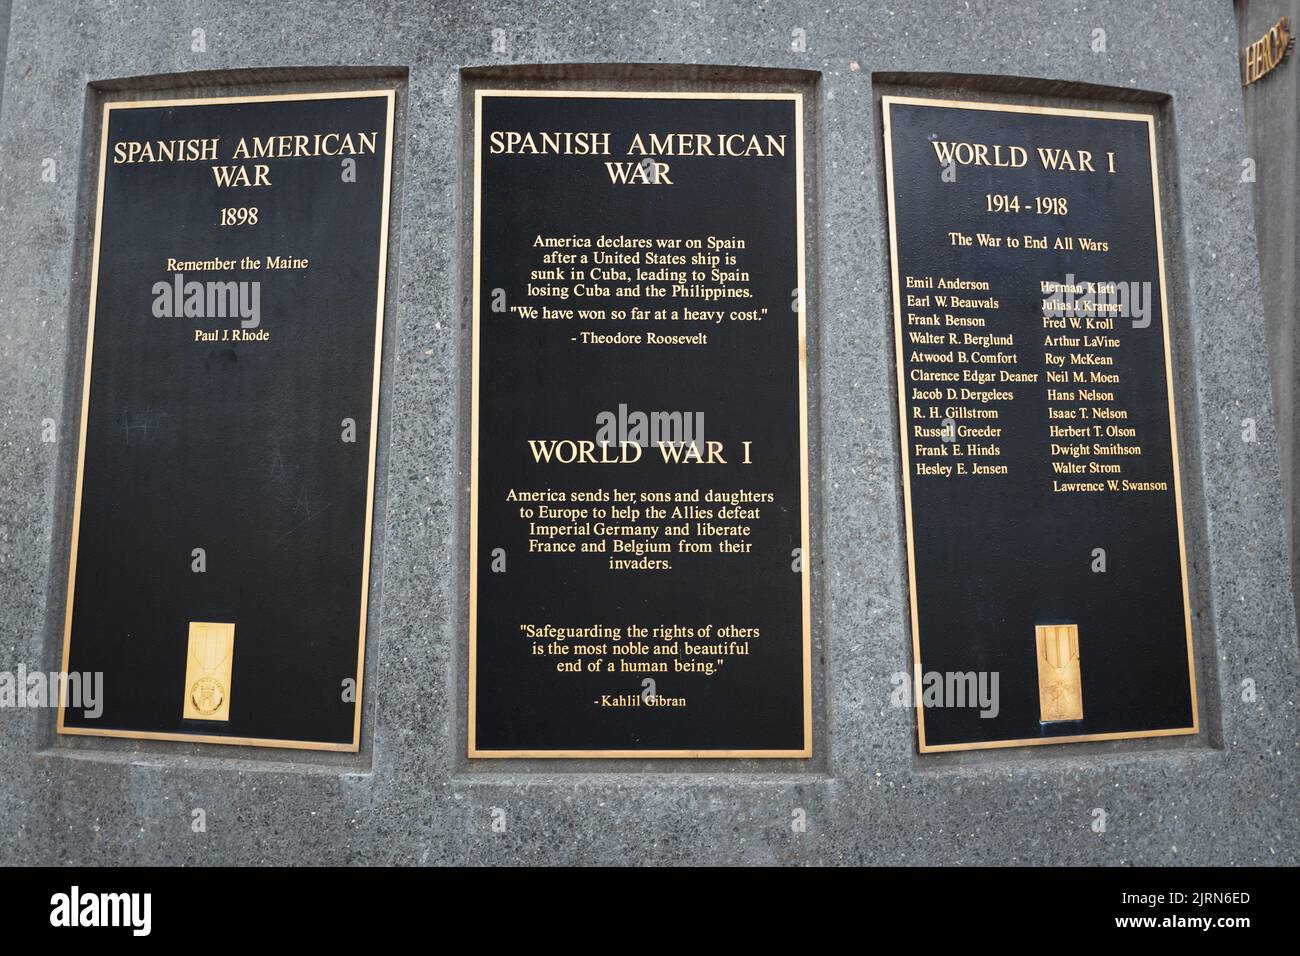 STILLWATER, MN, USA - AUGUST 24, 2022: World War I placard at Stillwater Minnesota Veterans Memorial. Stock Photo